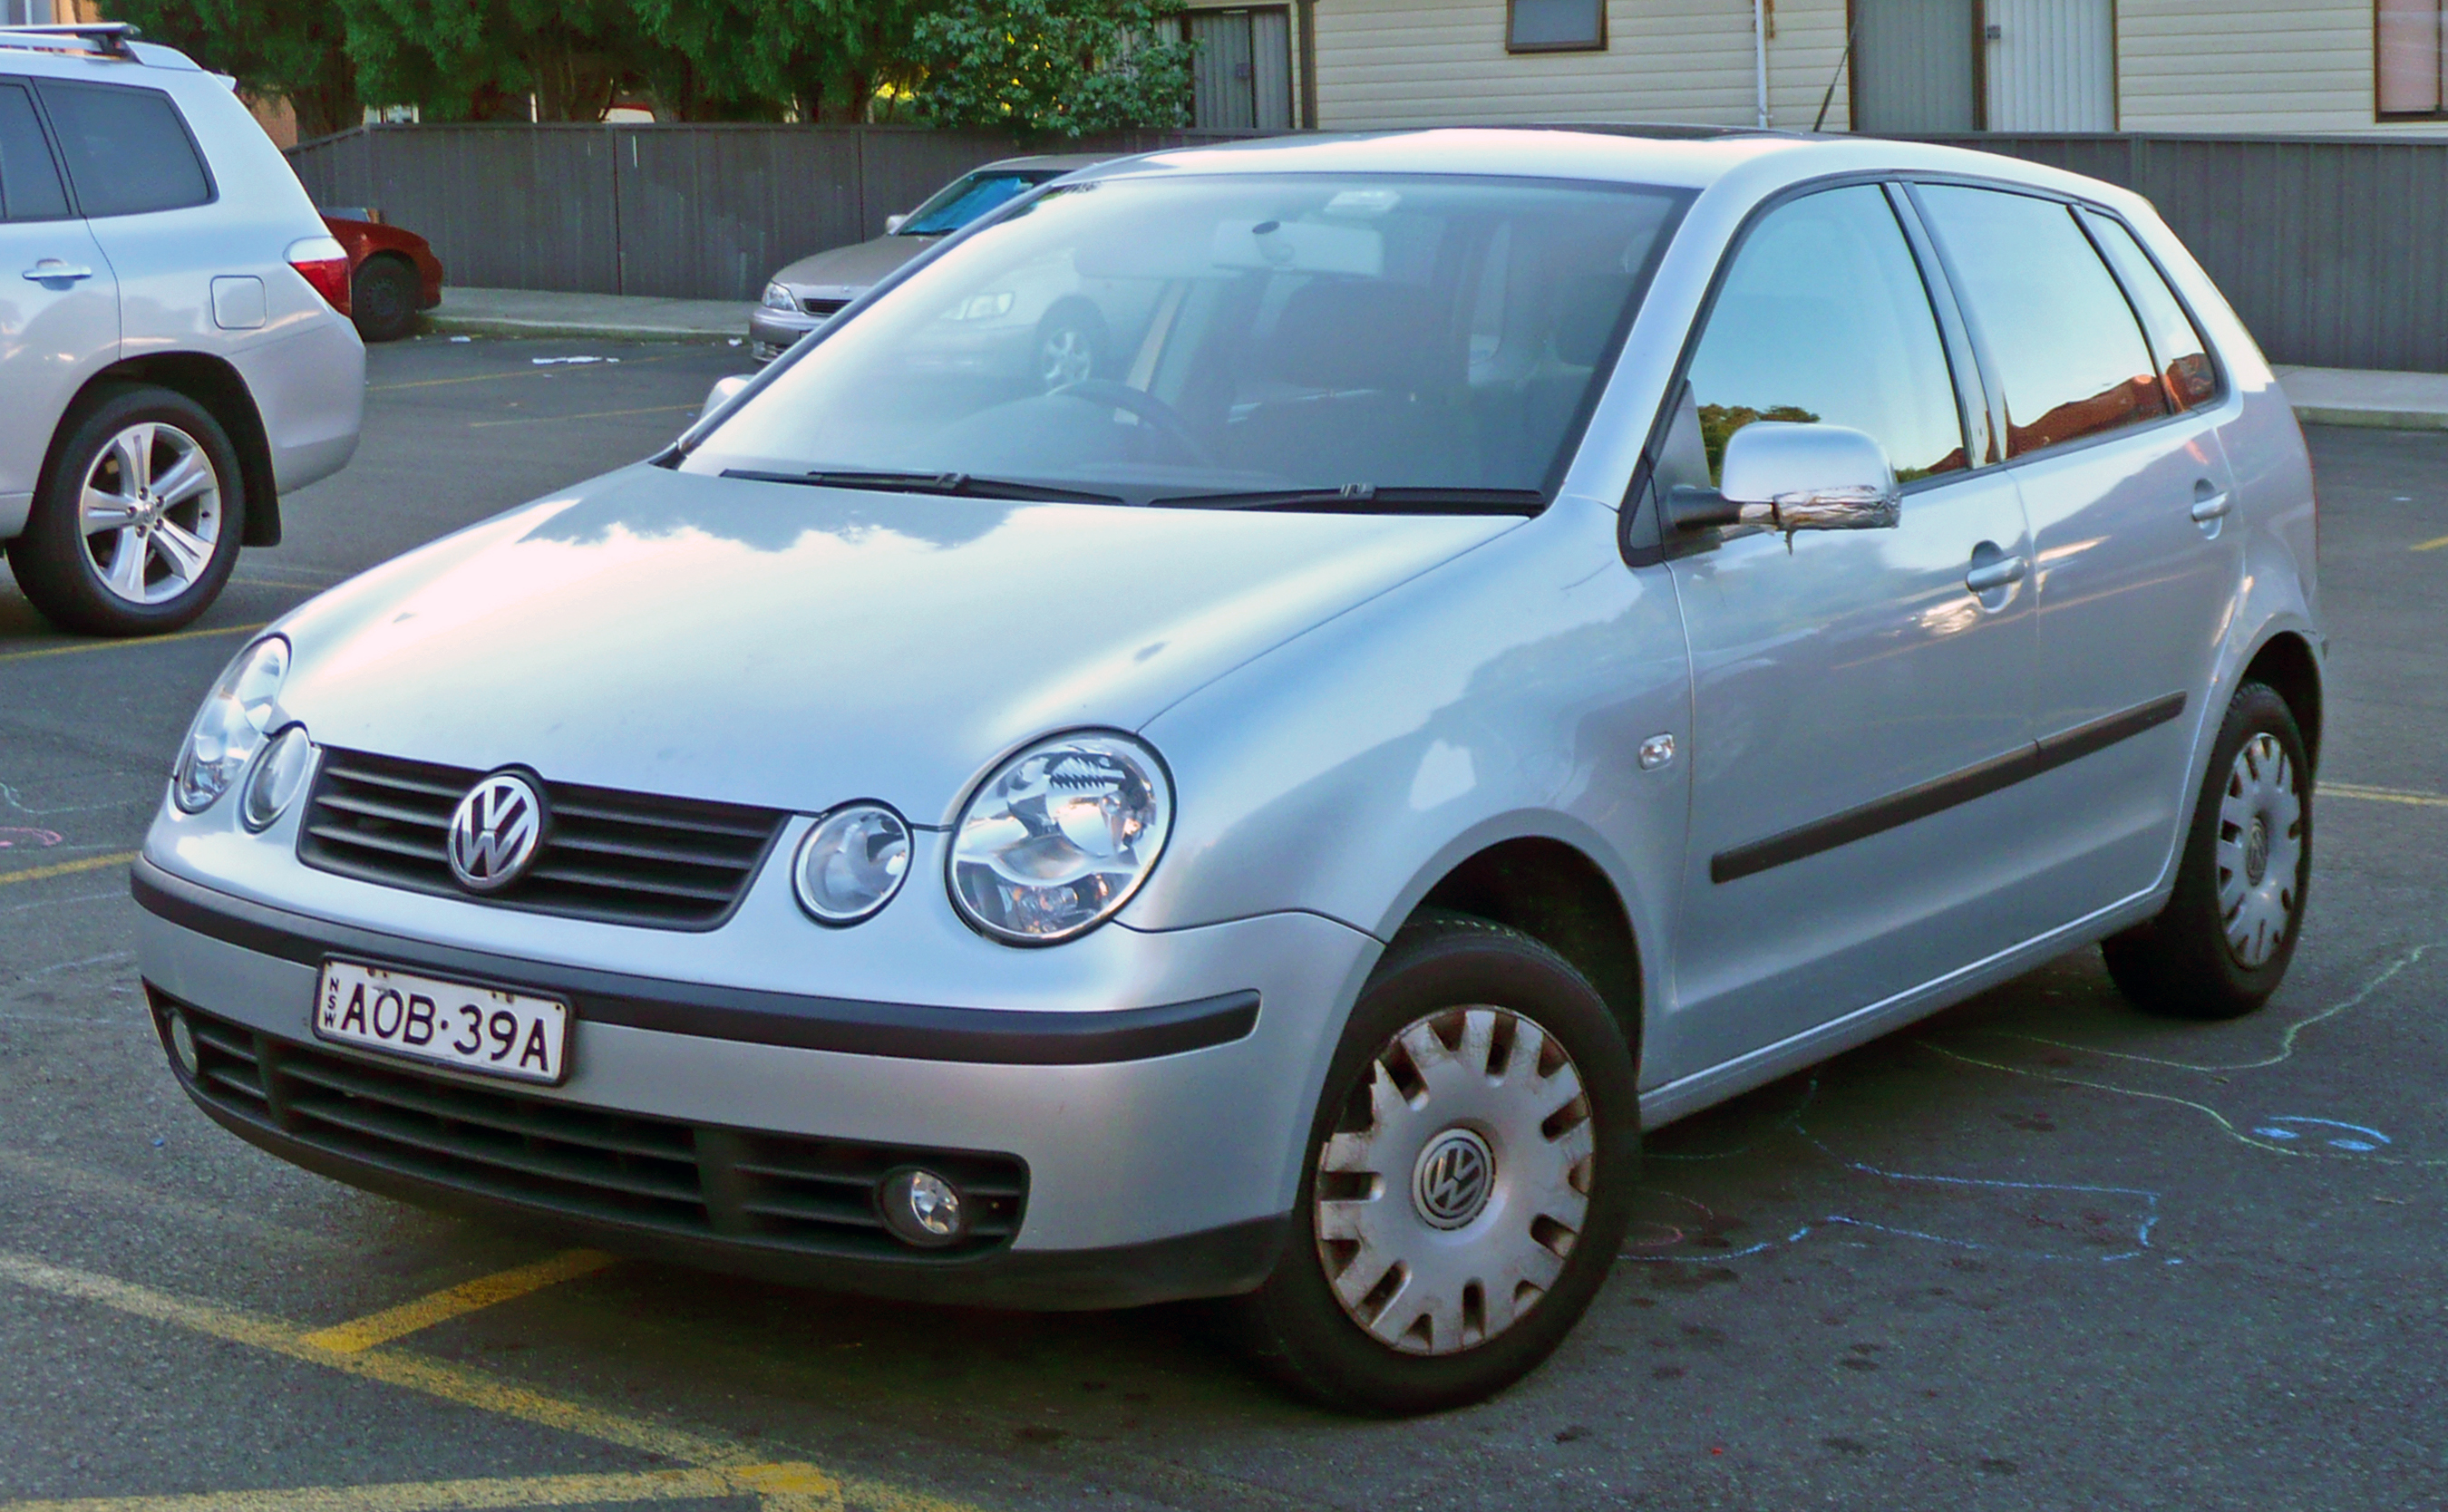 File:2002-2005 Volkswagen Polo (9N) 5-door hatchback 01.